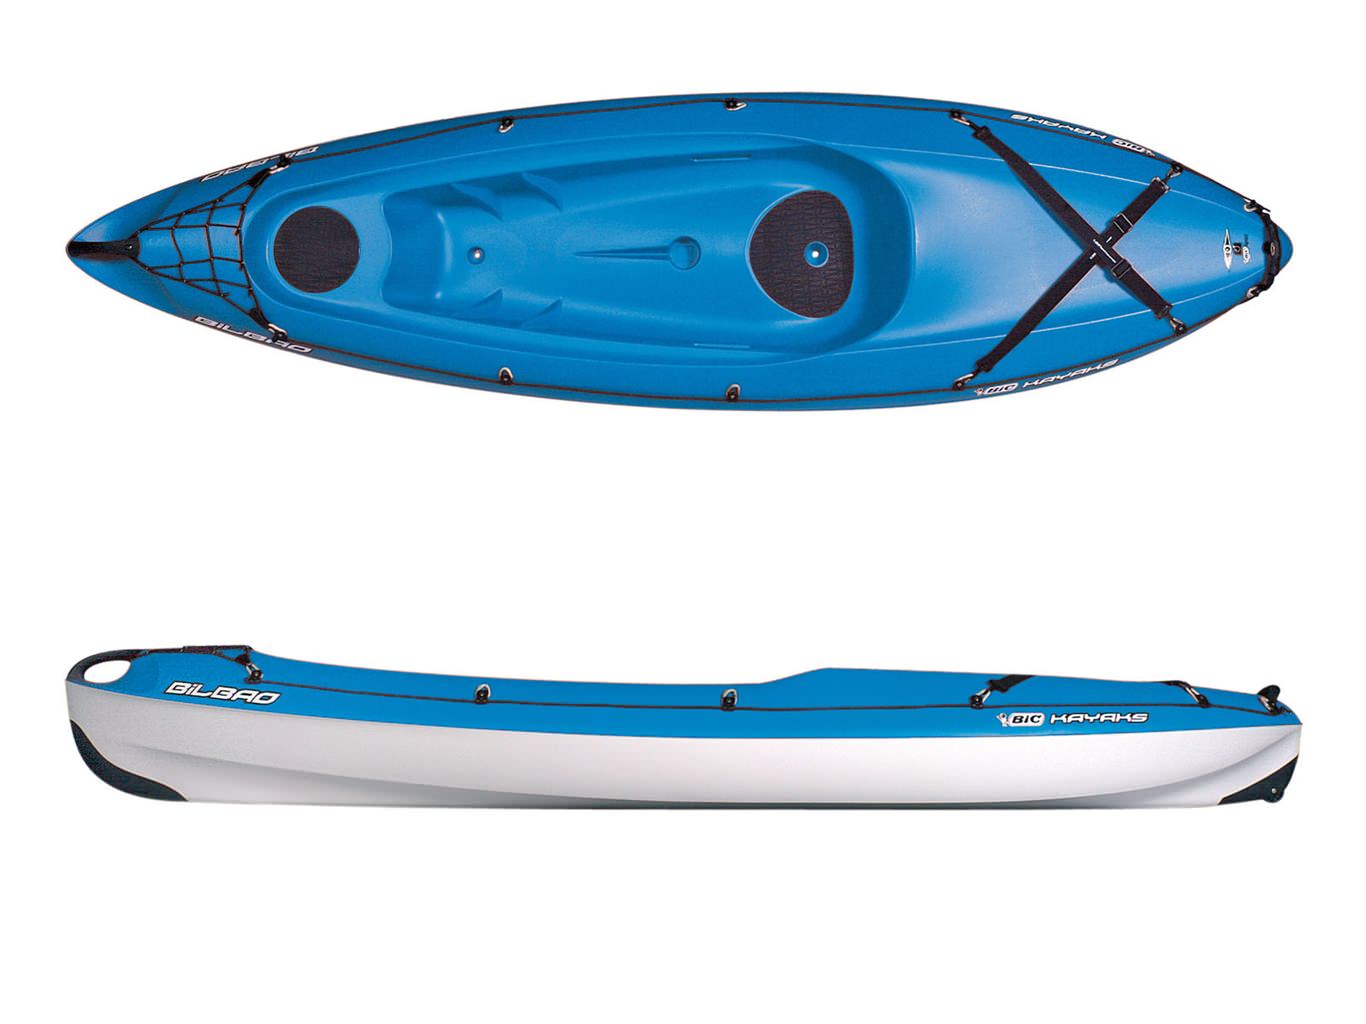 Thuyền kayak Sit-On-Top 1 người BLB LLDPE - 2035